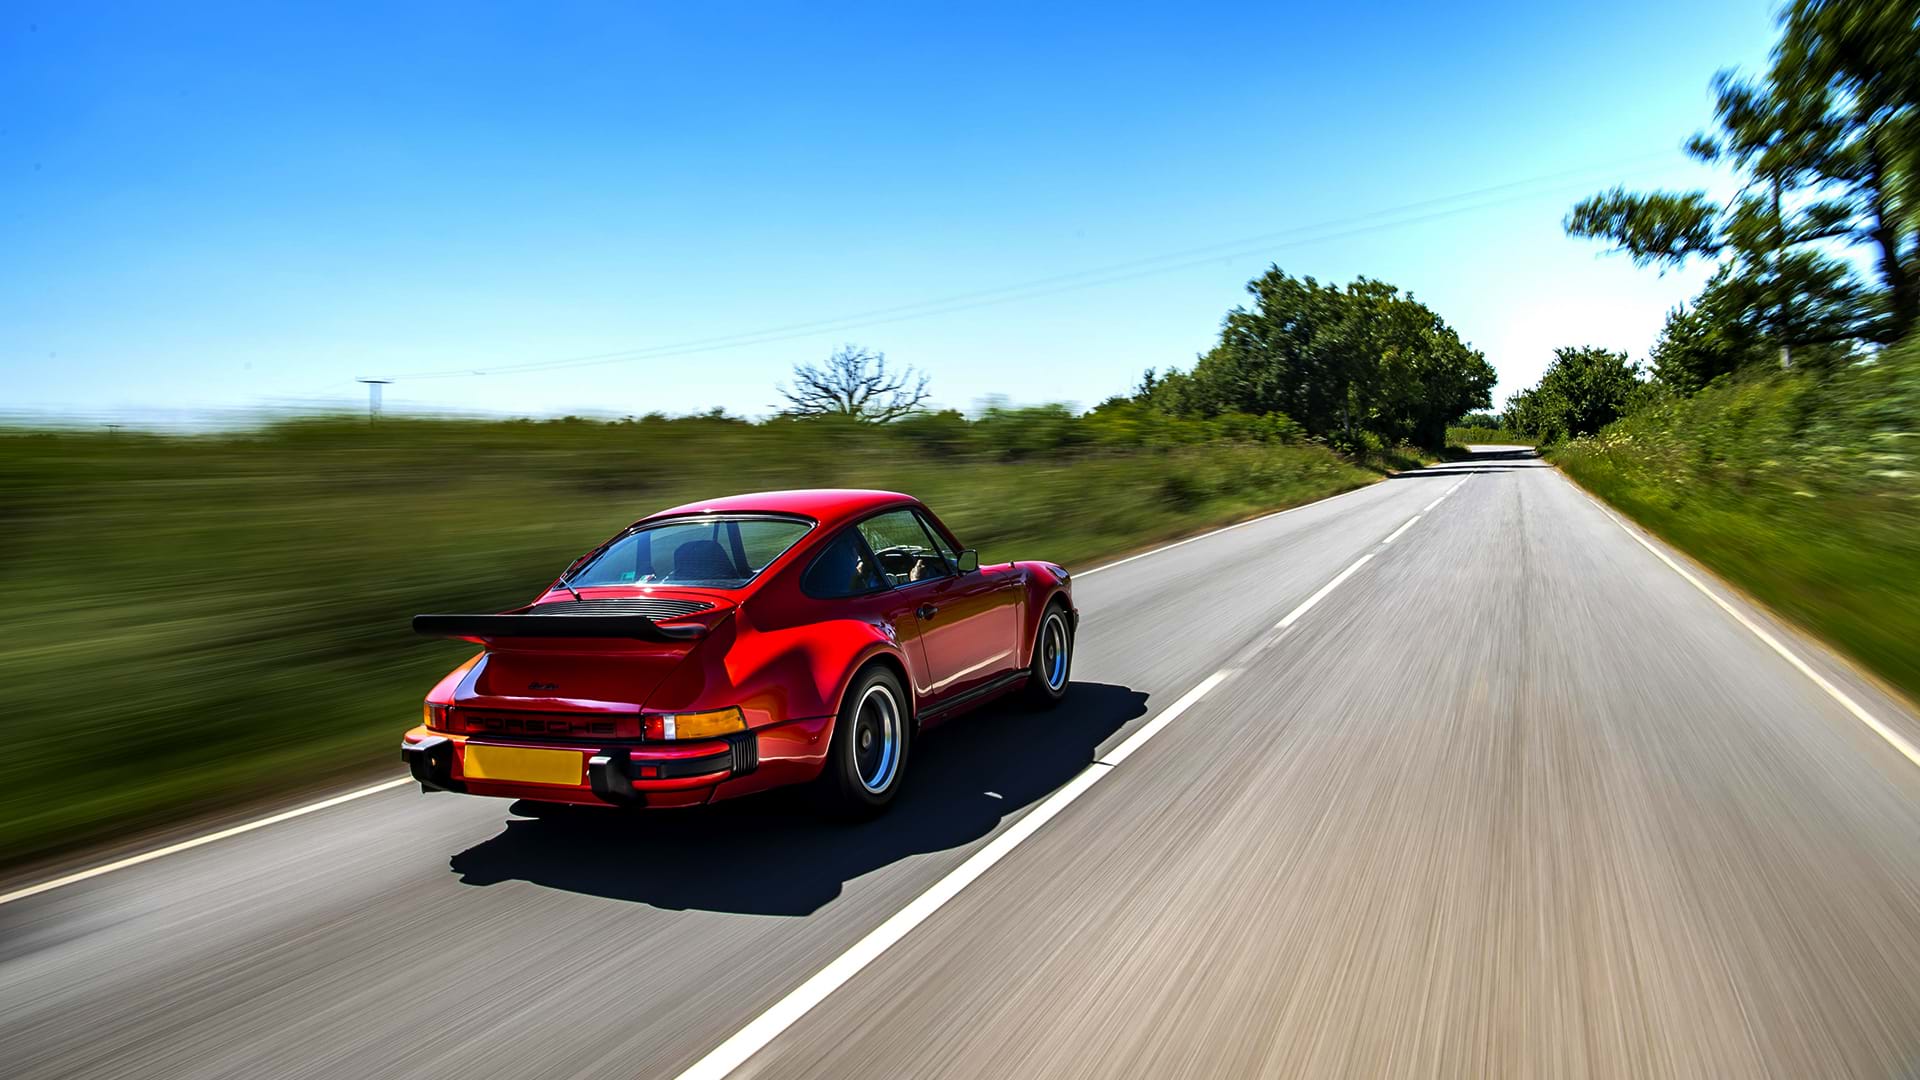 Ein roter Vintage-Turbo Porsche 930 braust an einem sonnigen Tag über eine schöne Landstraße.